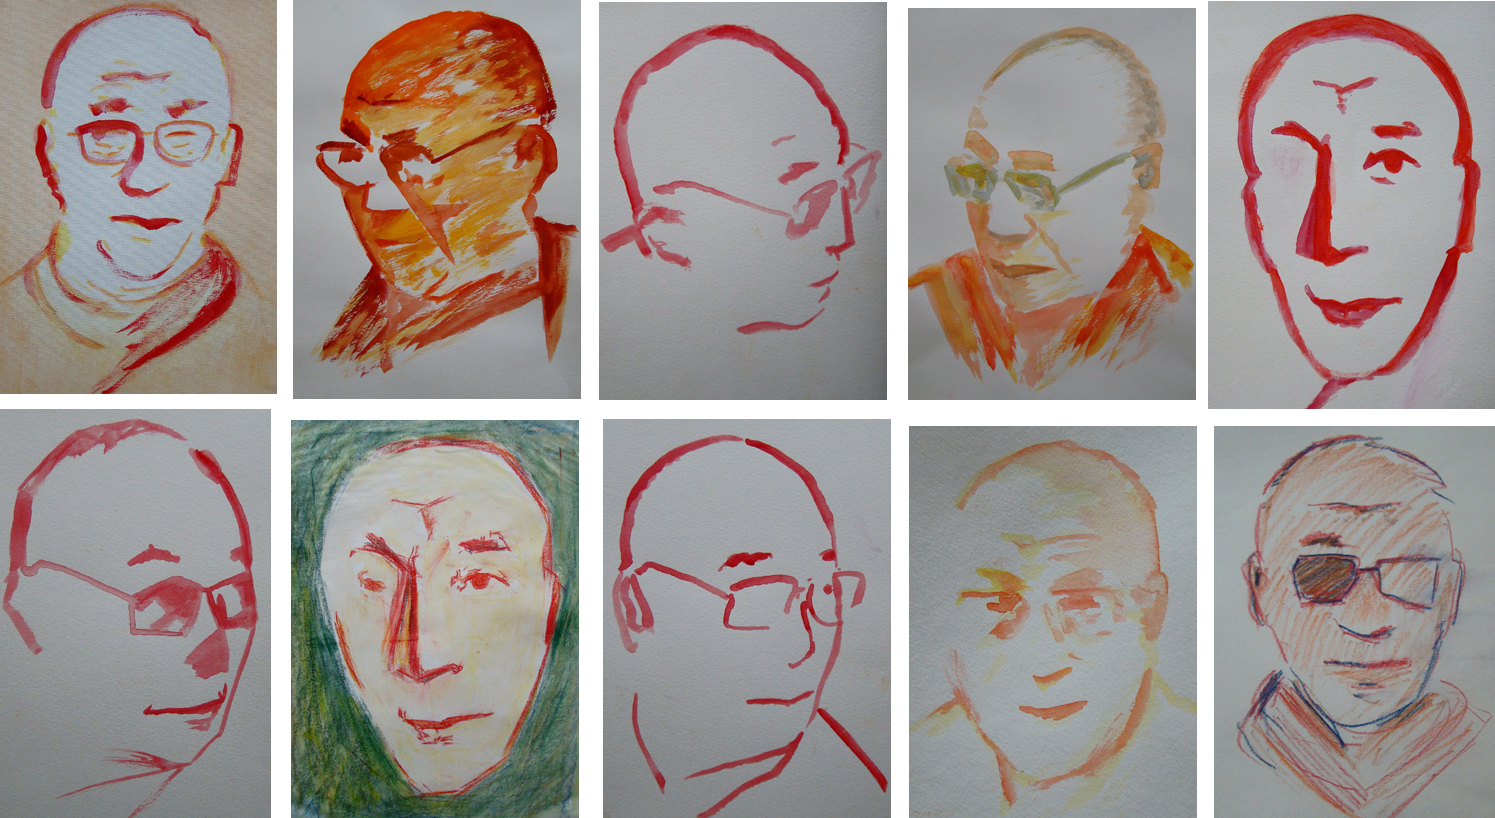 dalai-lama-drawing-copy